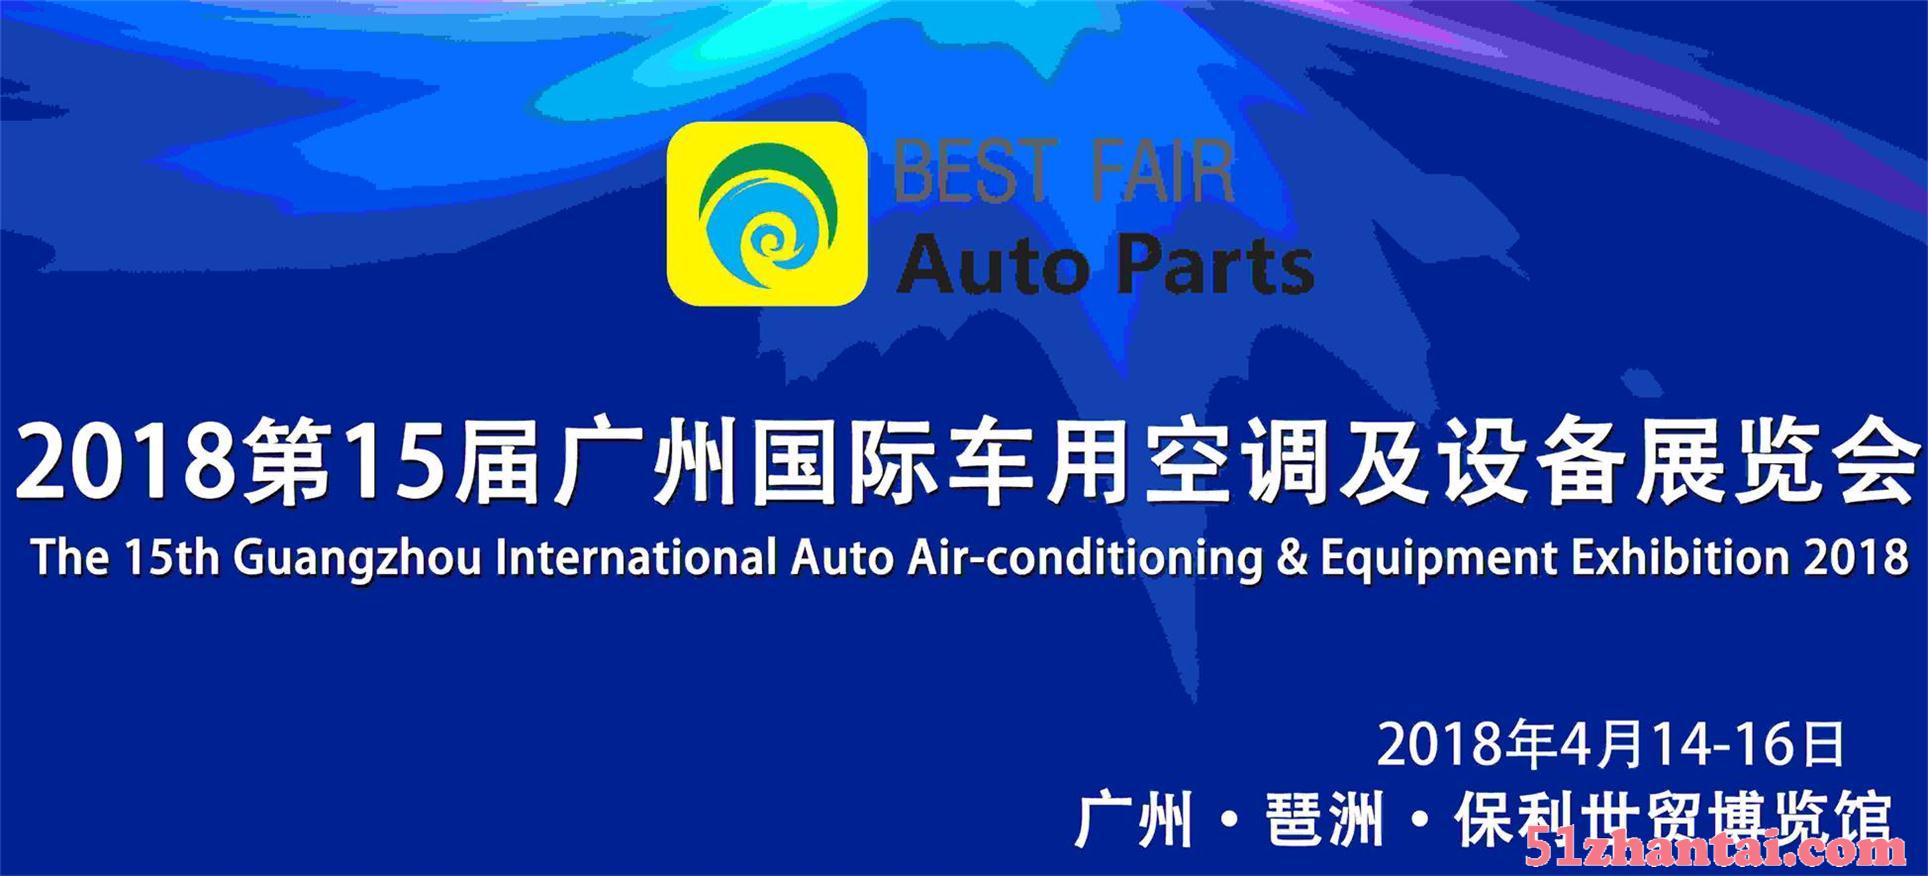 2018第15届广州国际车用零配件展览会-图1